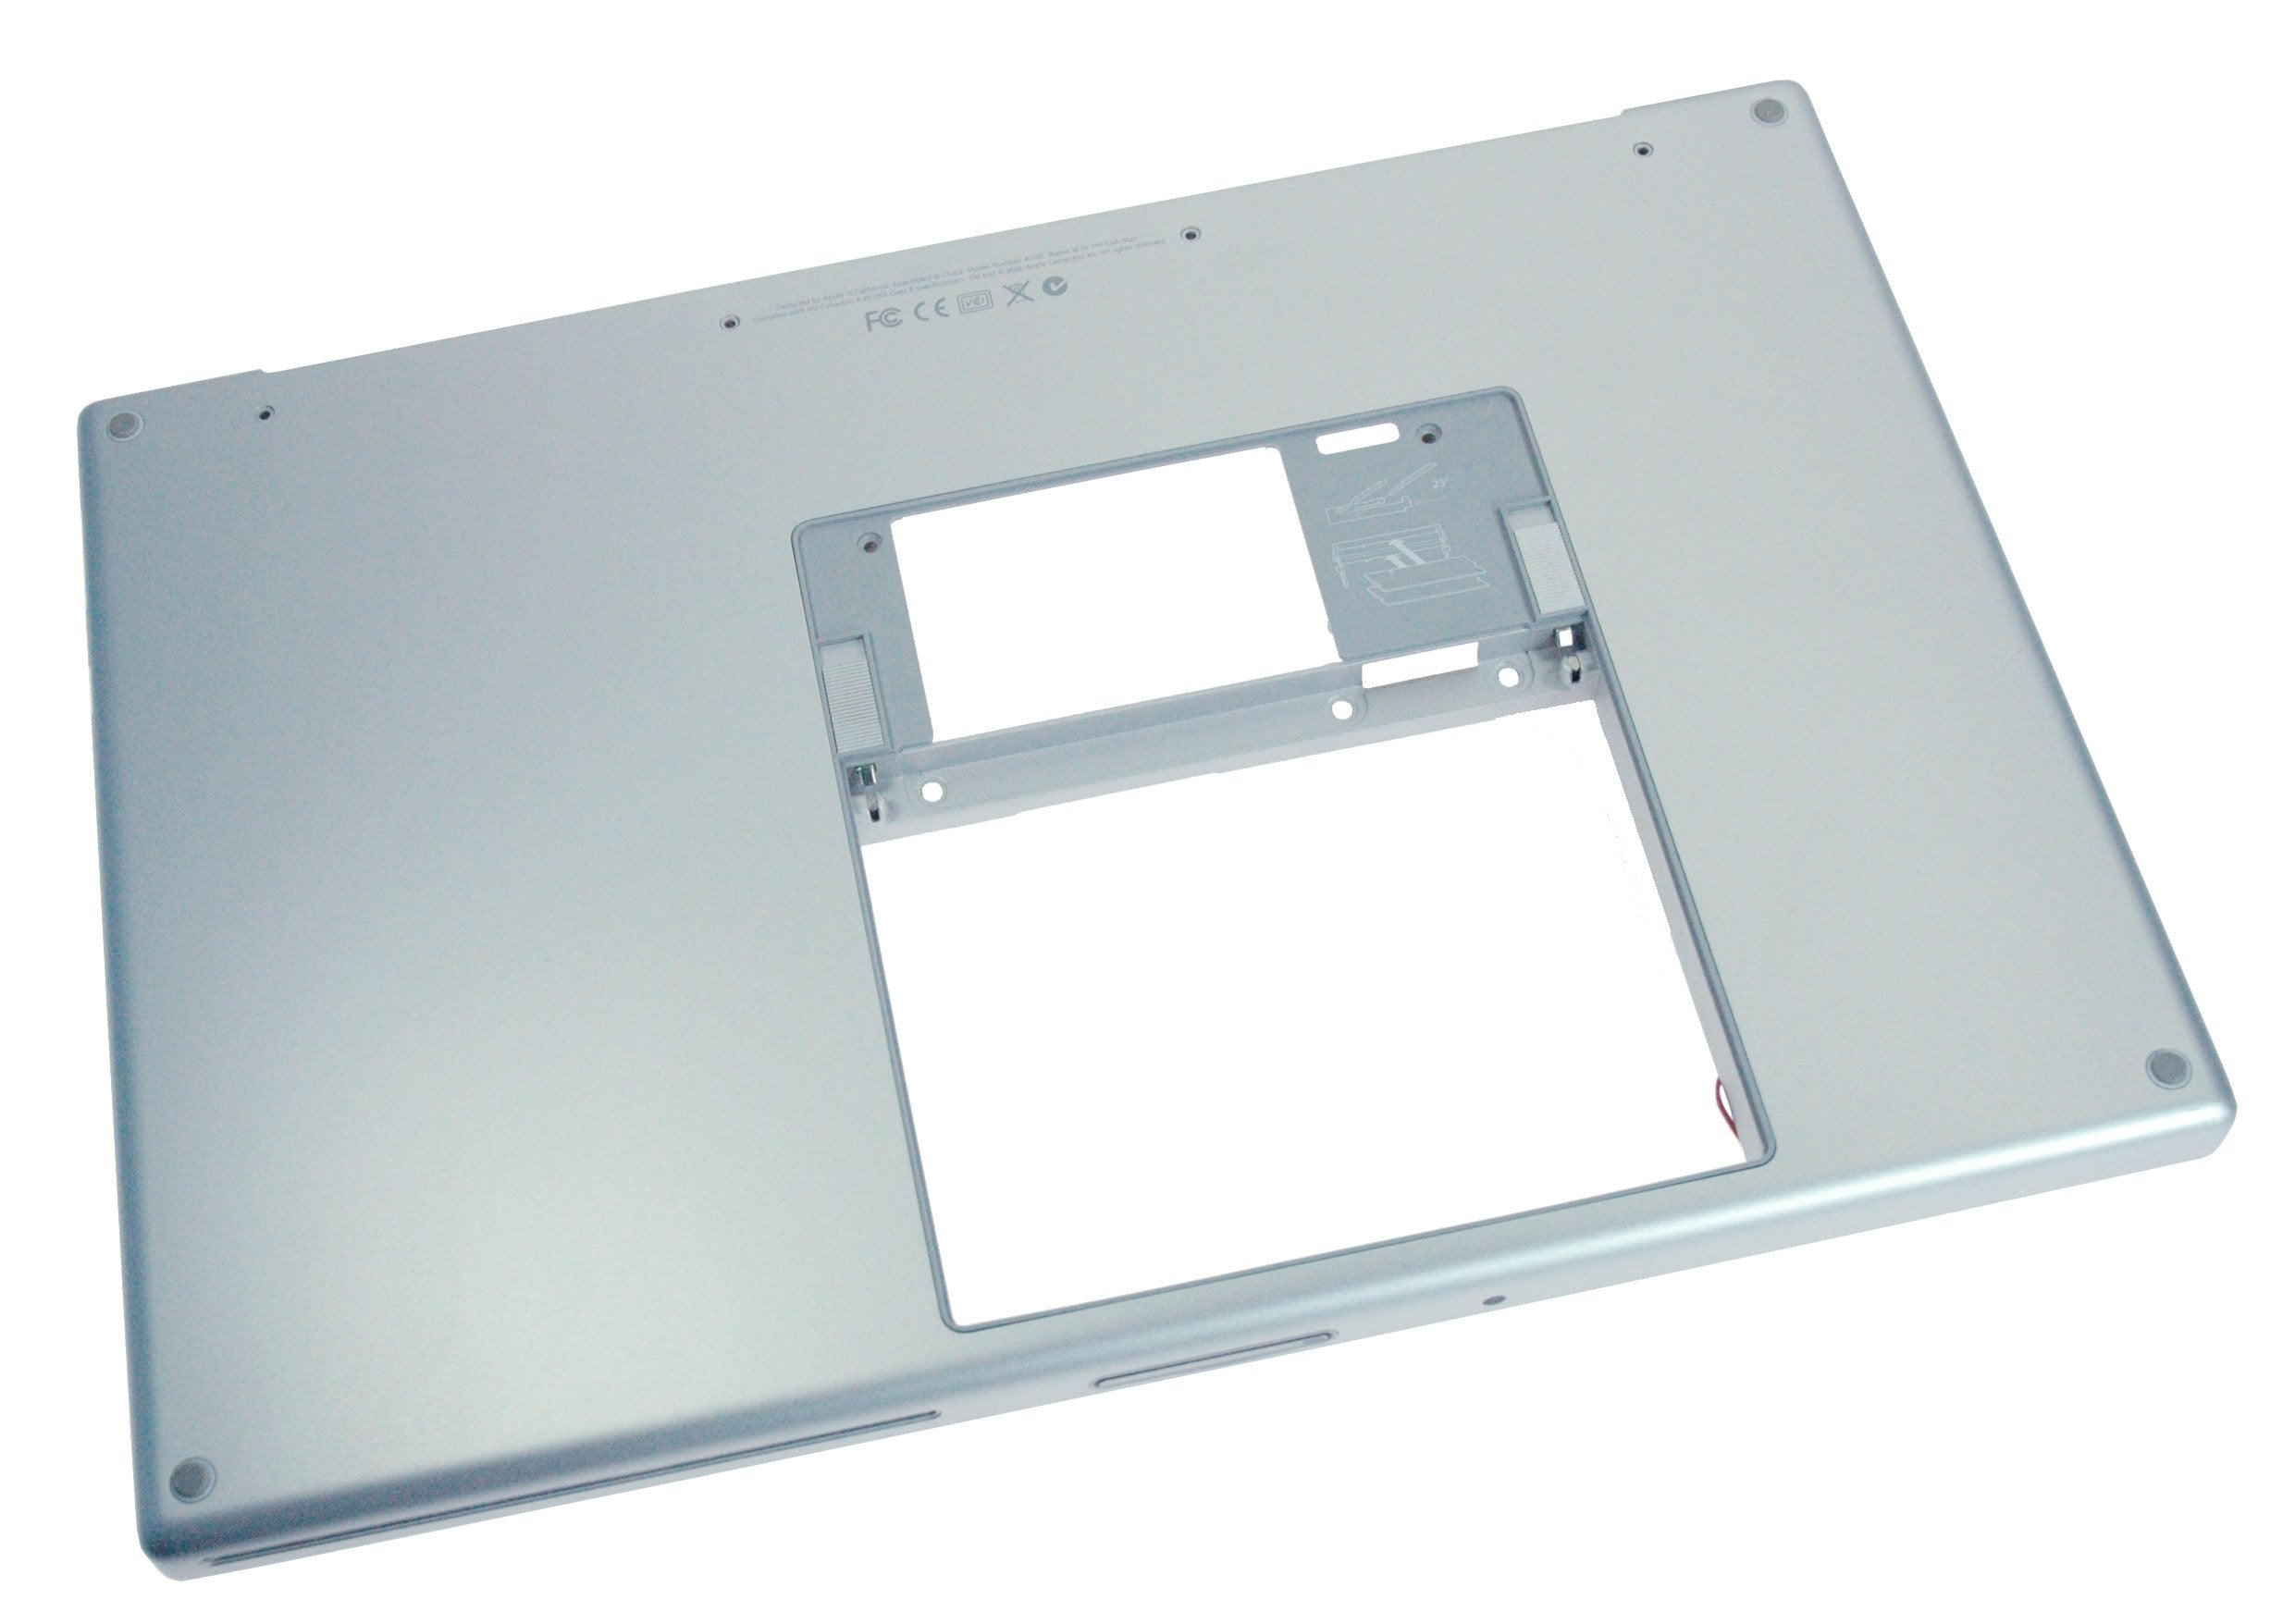 MacBook Pro 15" (Model A1150) Lower Case